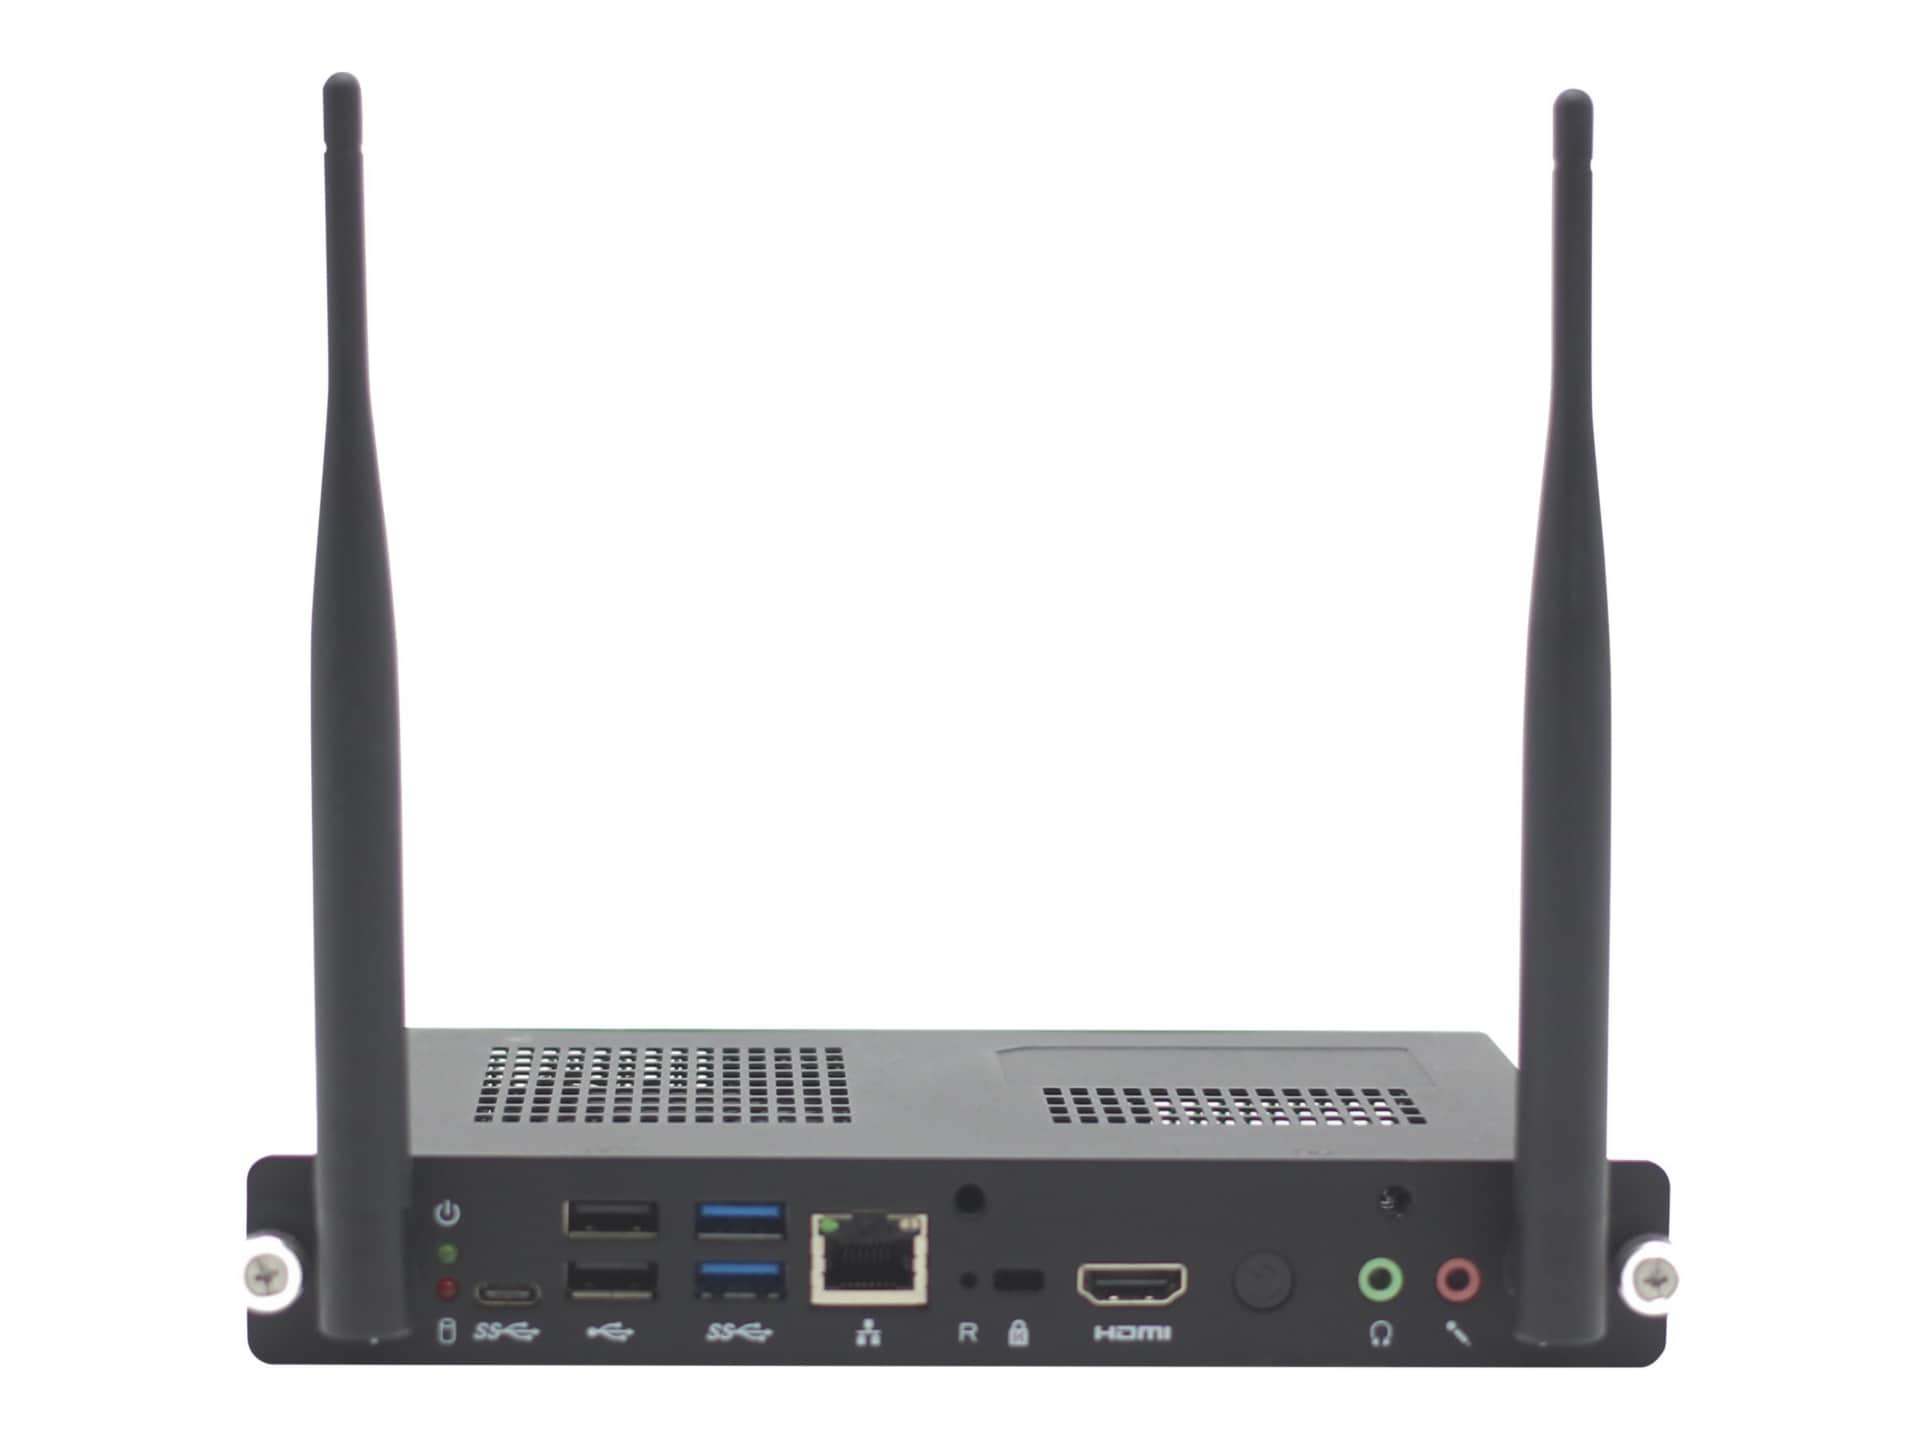 SMART PCM8-i7 vPro OPS PC - digital signage player